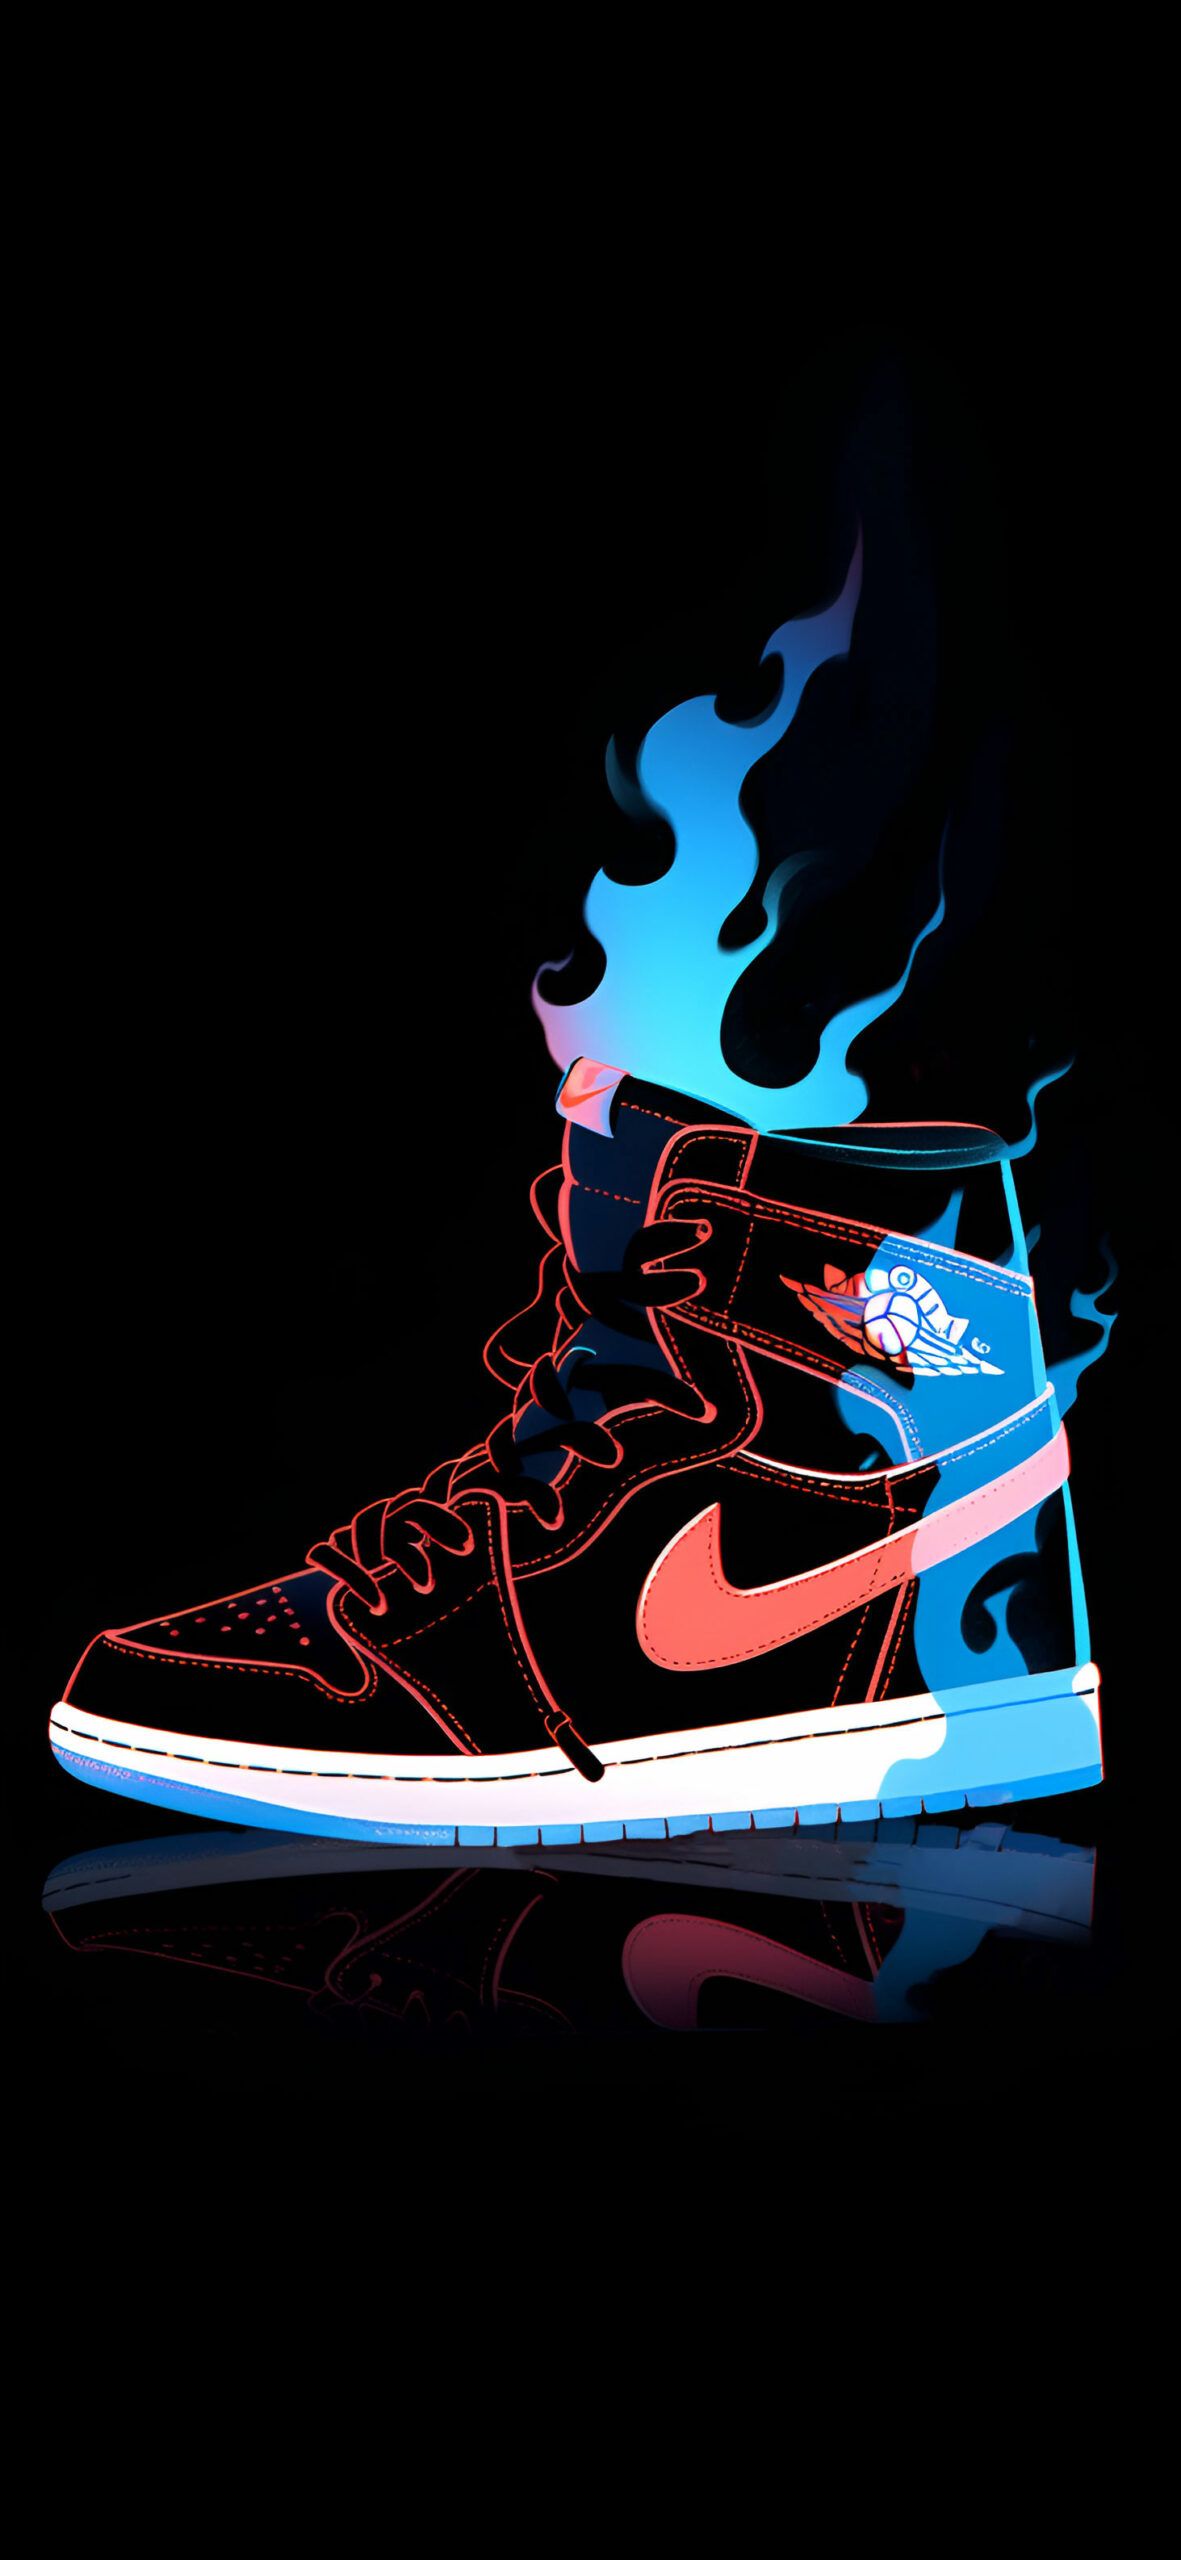 Fiery Nike Air Jordan 1 Cool Wallpaper